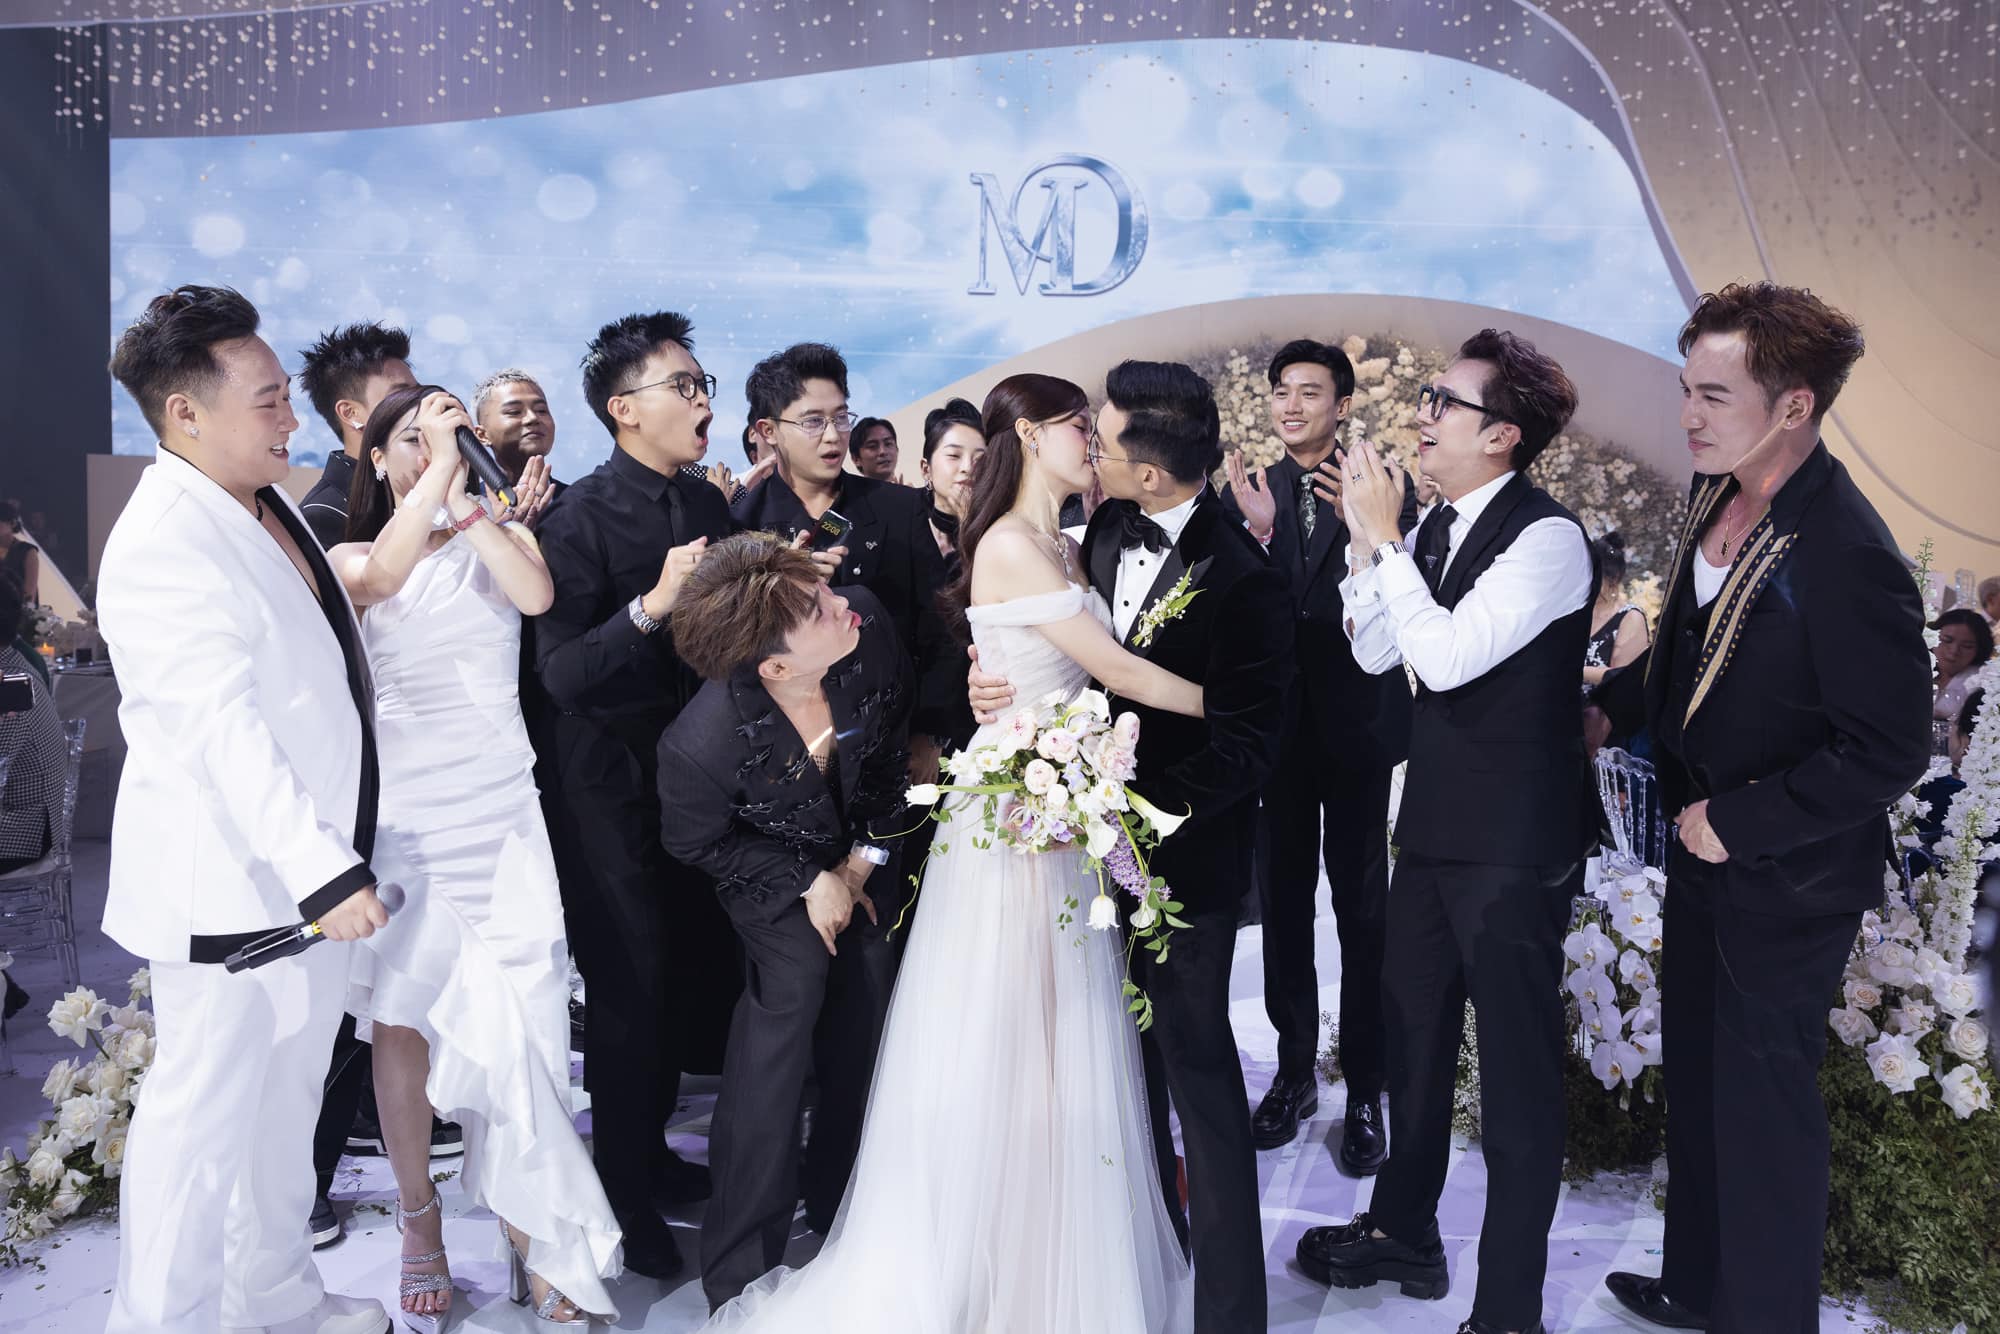 Midu xin netizen đừng chỉ trích vì 1 hành động sau đám cưới - Ảnh 4.